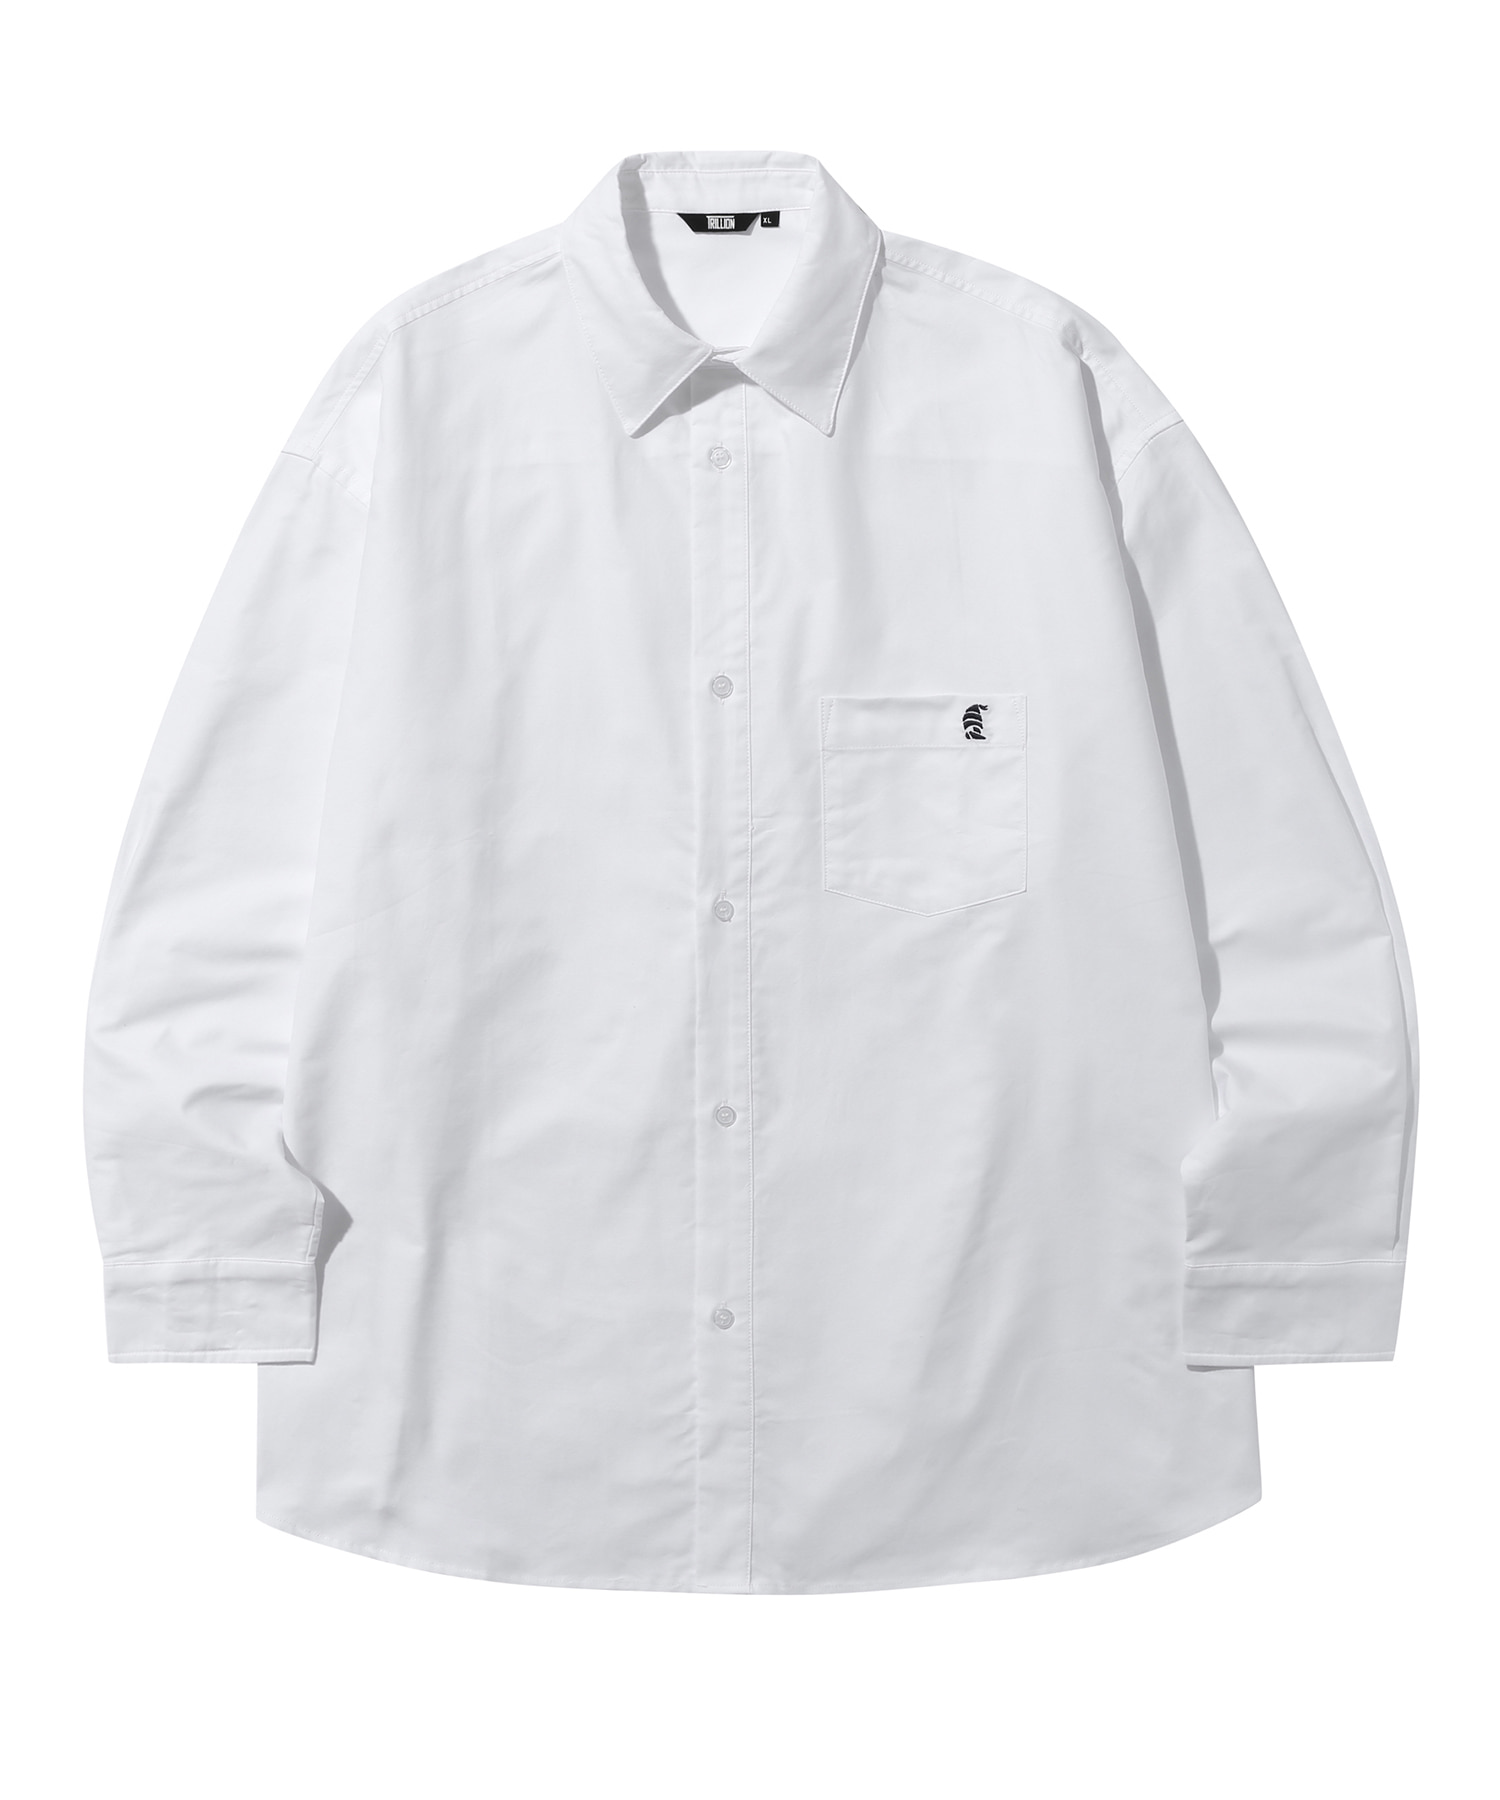 시티보이 보트자수 옥스포드 오버핏 셔츠 (WHITE)